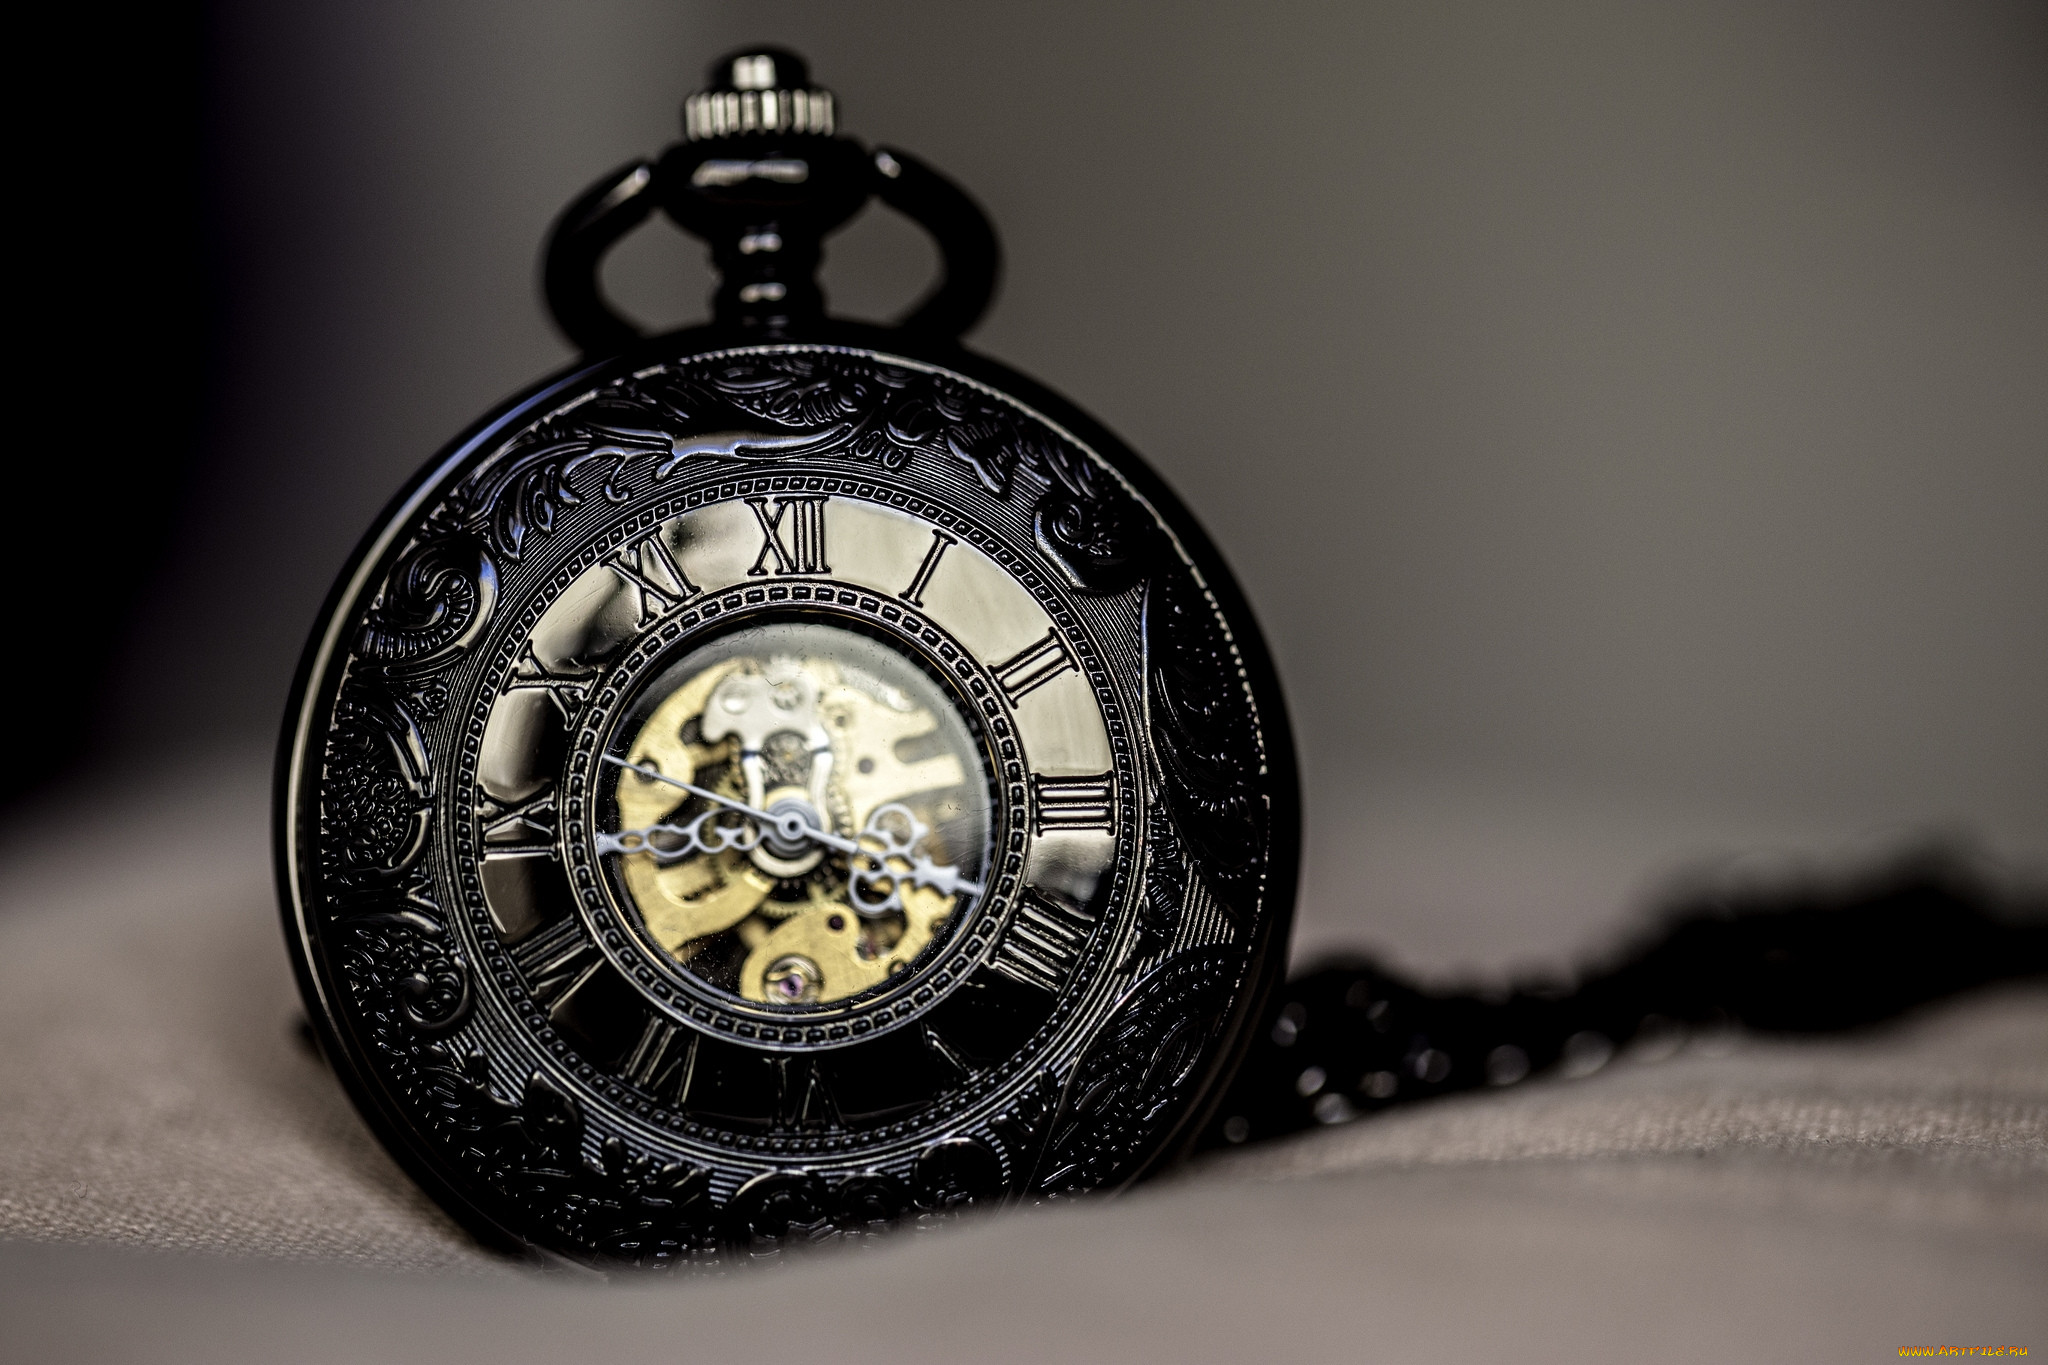 Фото обоев на часы. Часы. Часовой механизм. Разные часы. Разные старинные часы.